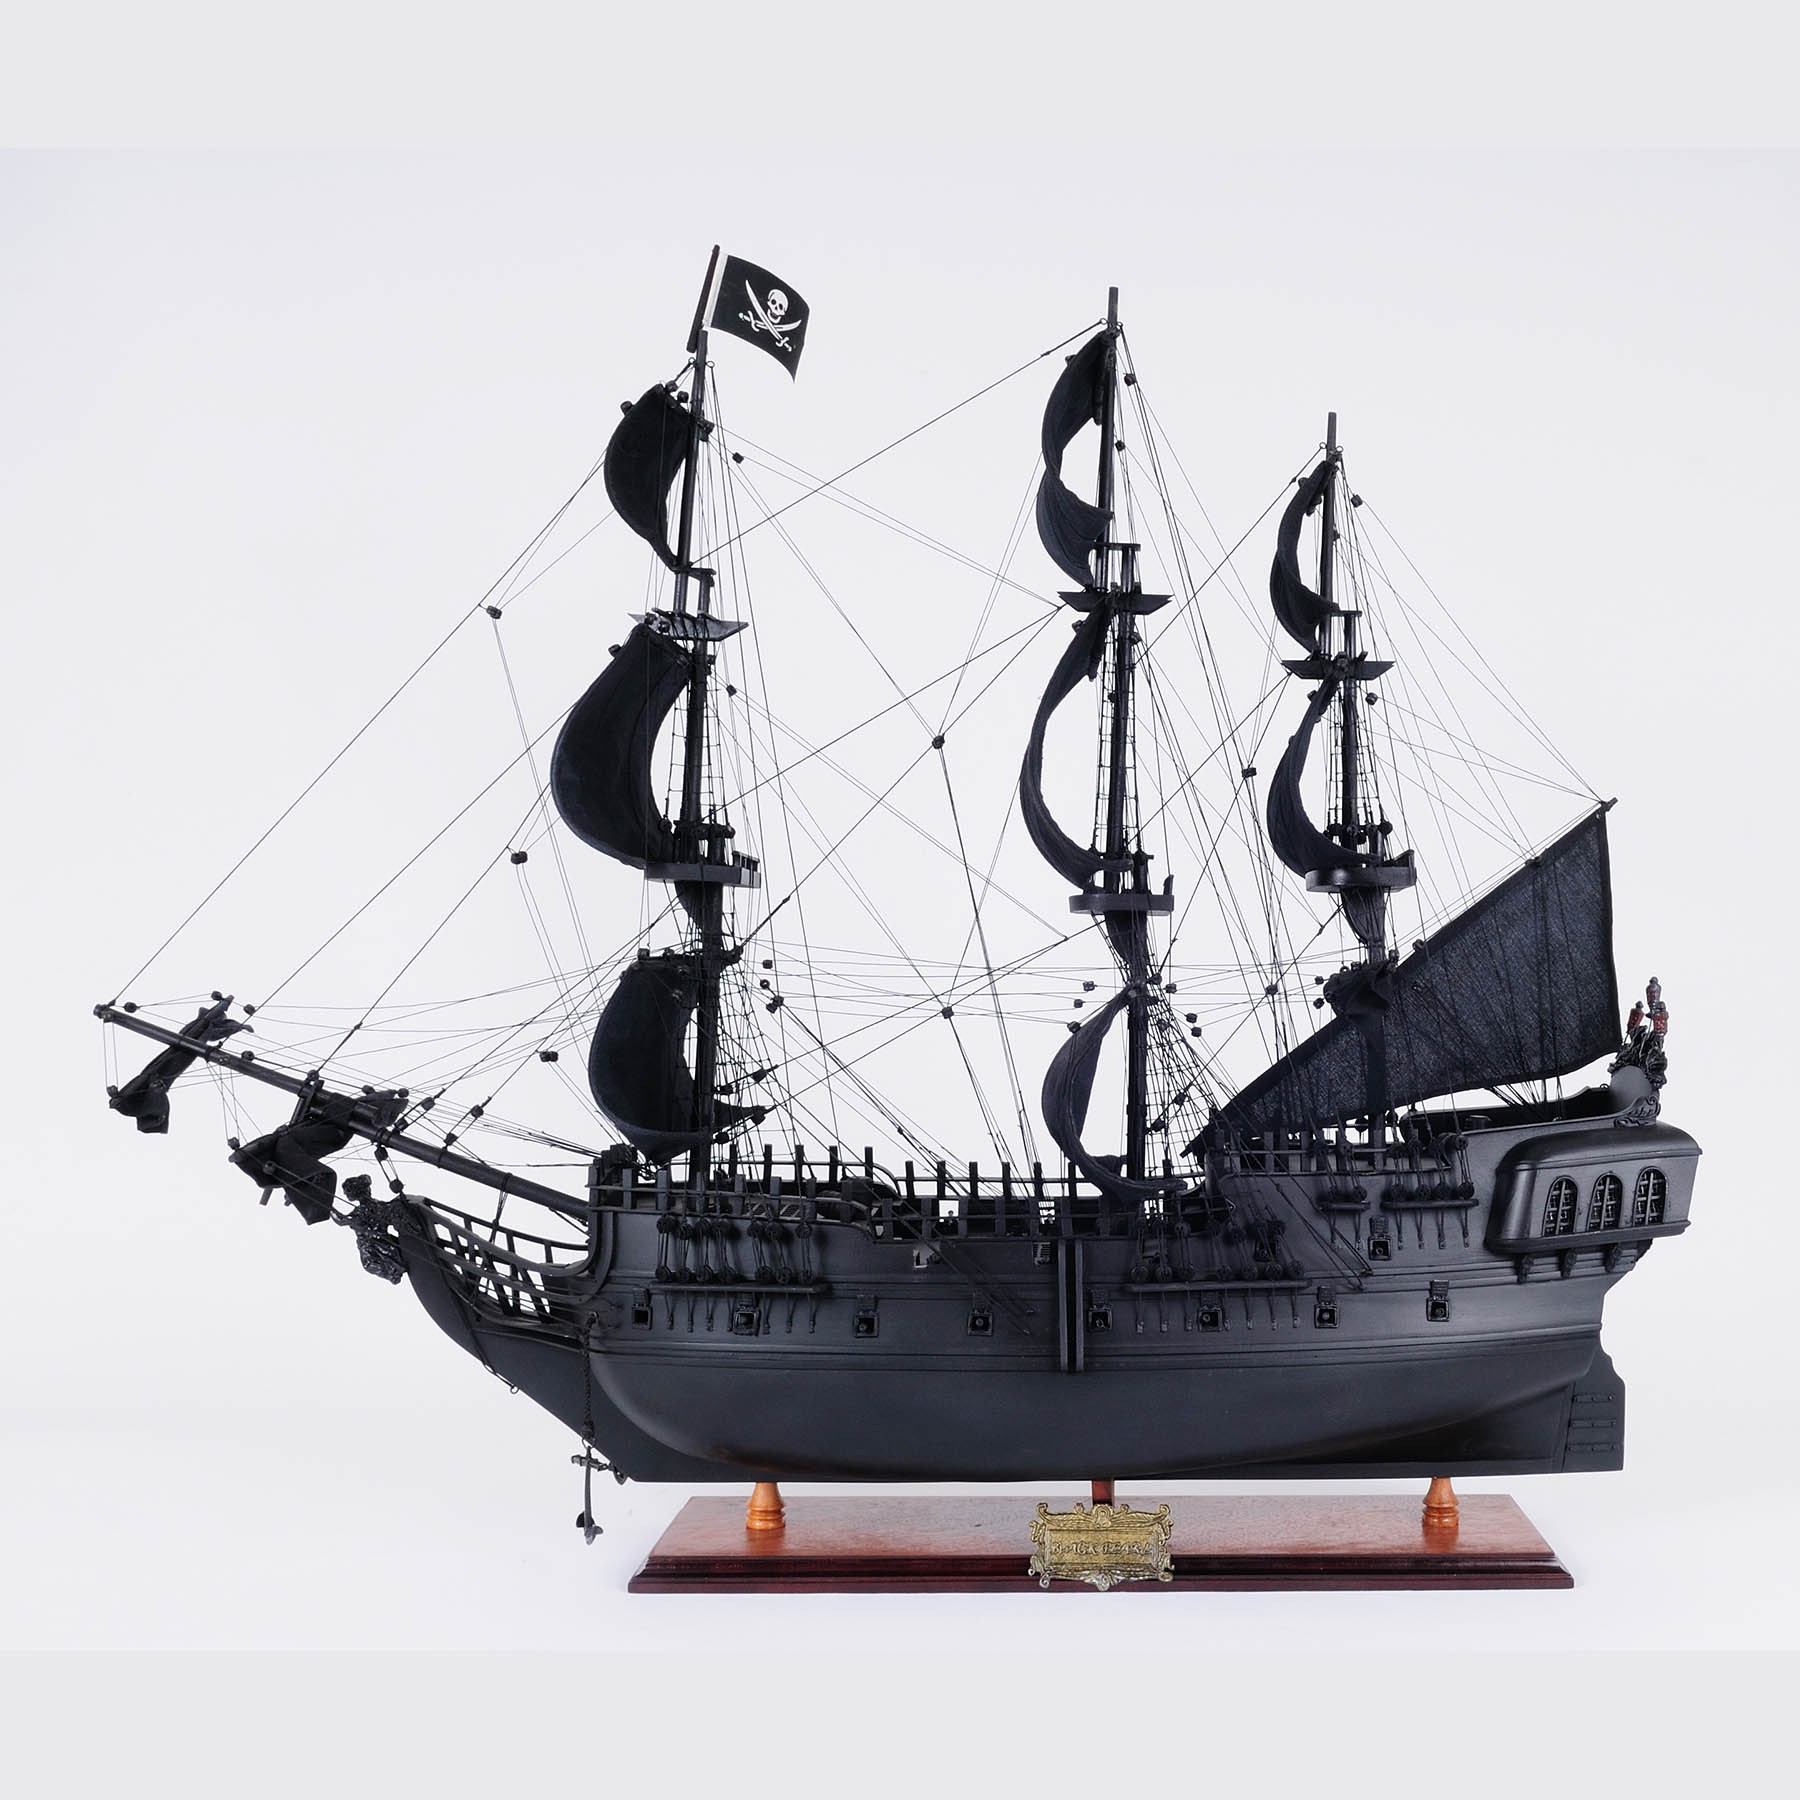 The Black Pearl Pirate Ship - Blog - Pirate Show Cancun, the pirate ship 